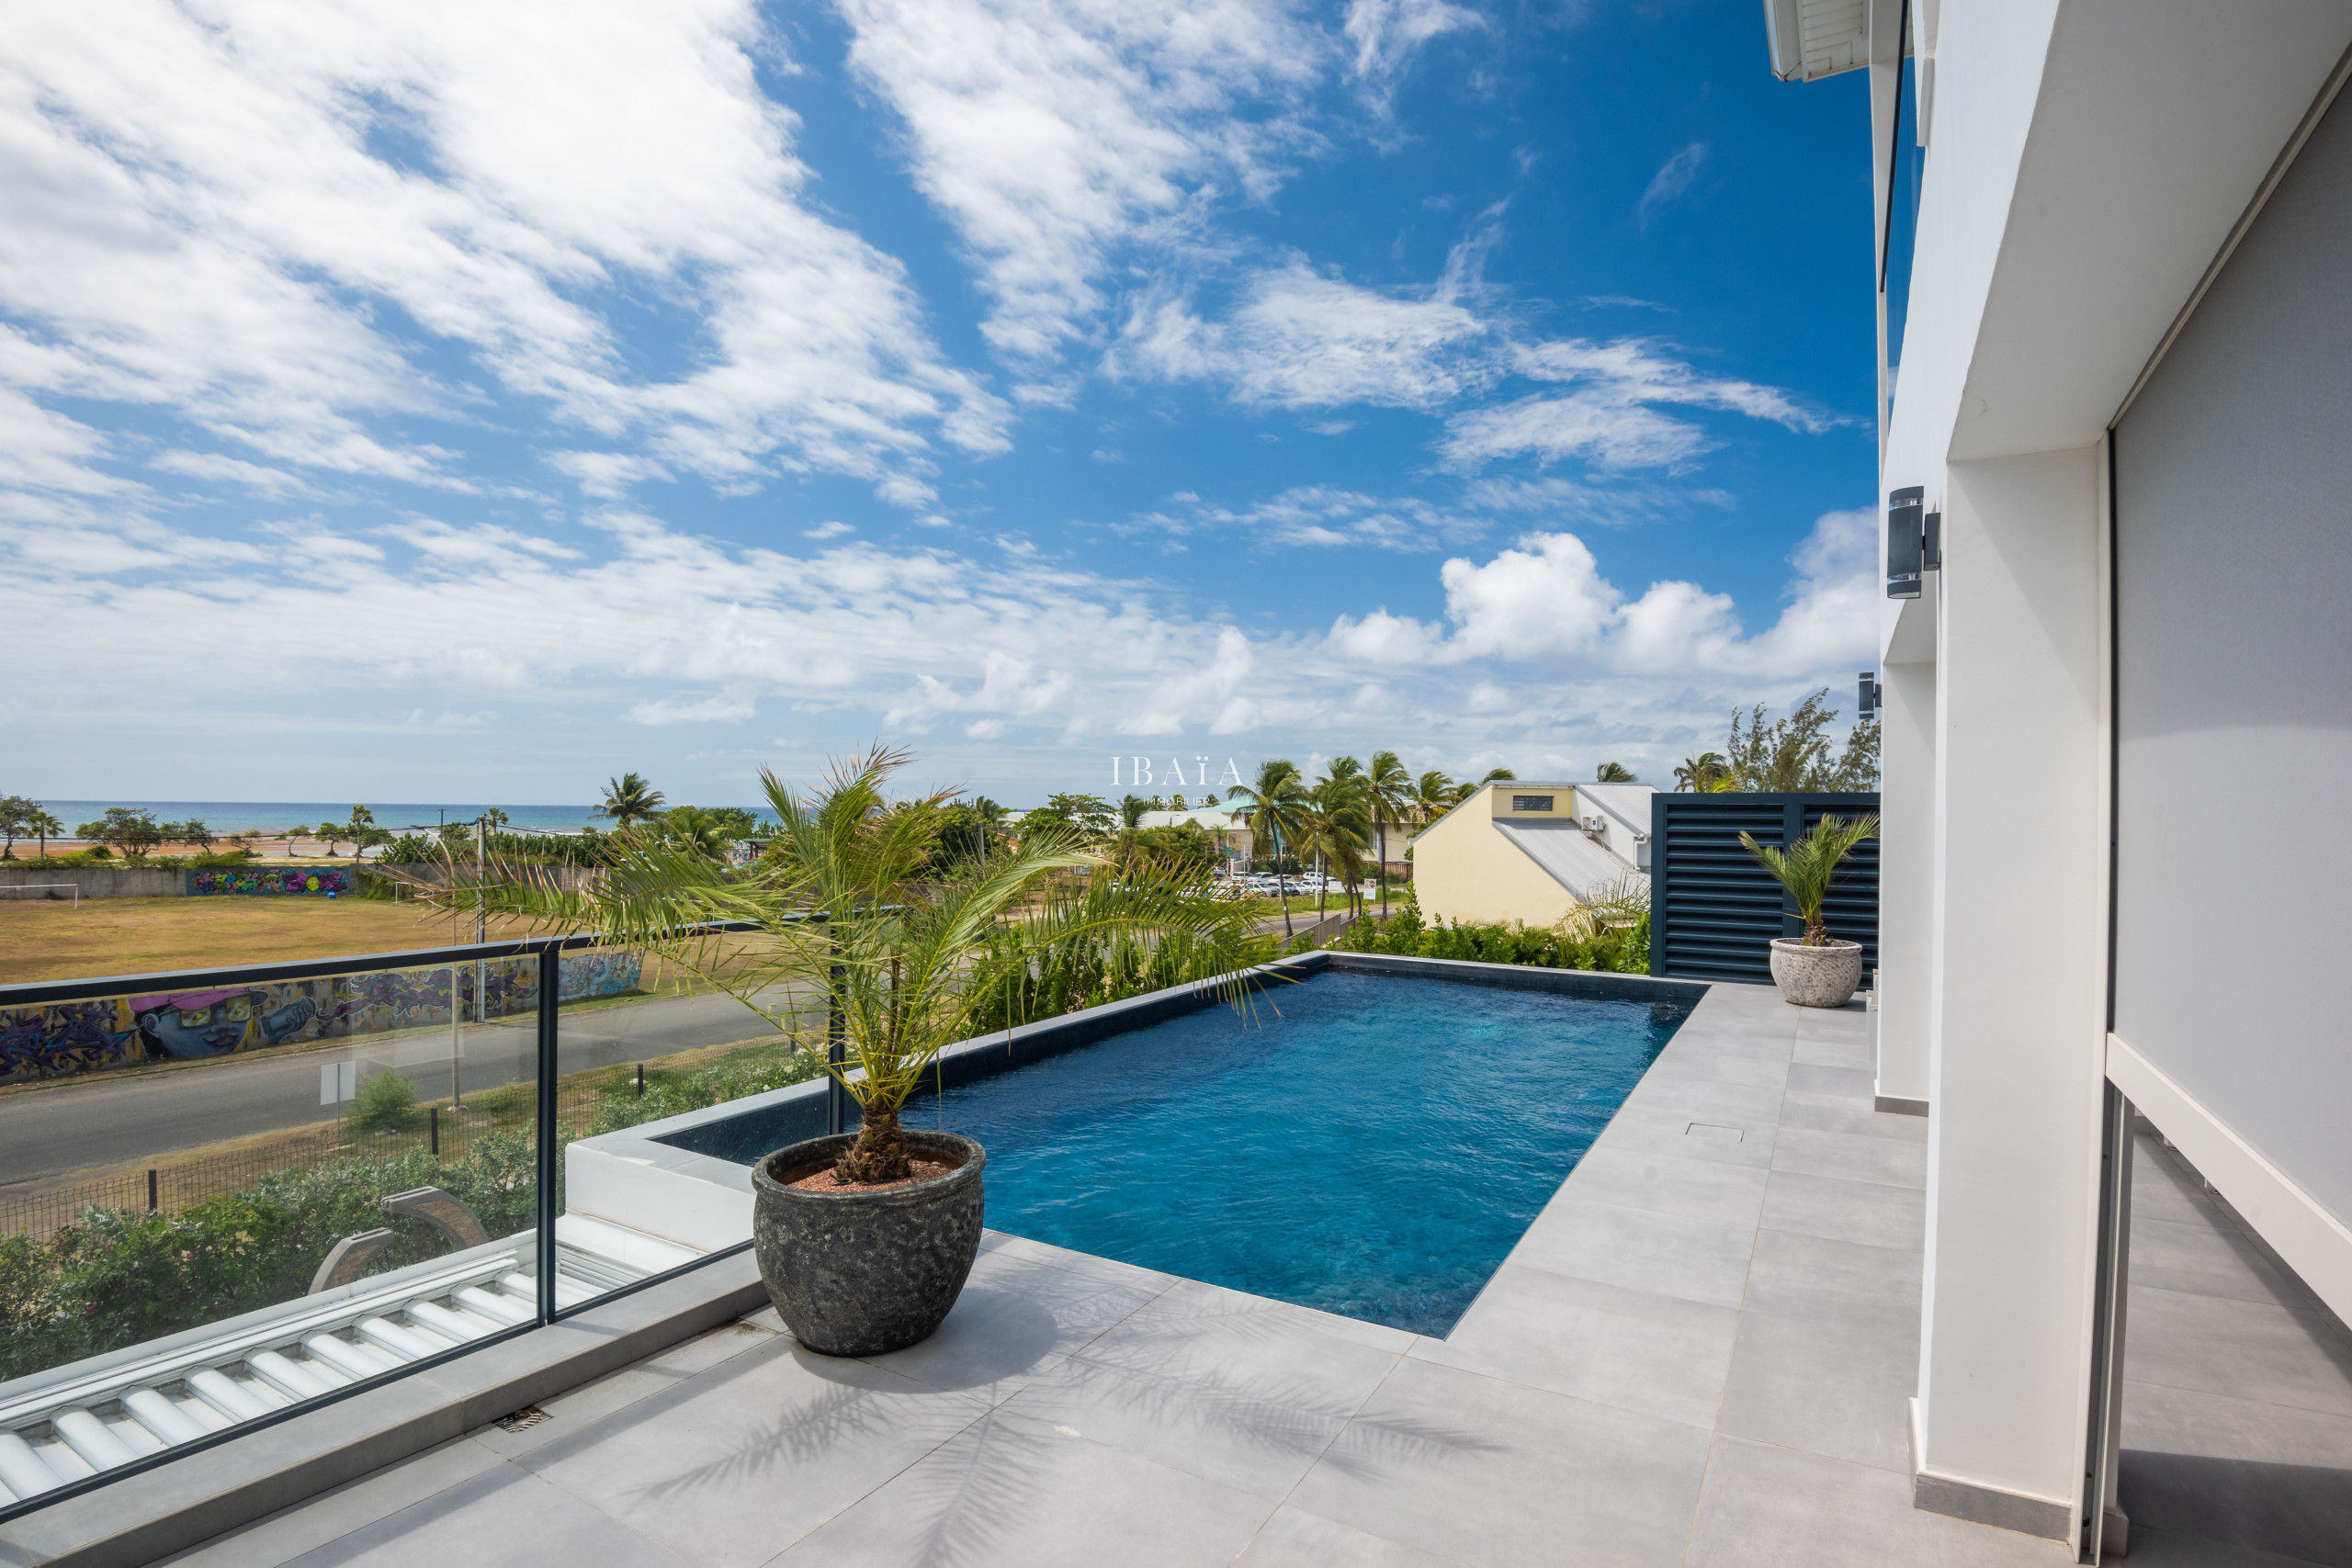 Vue d'une terrasse avec piscine donnant sur la plage et le ciel bleu nuageux.